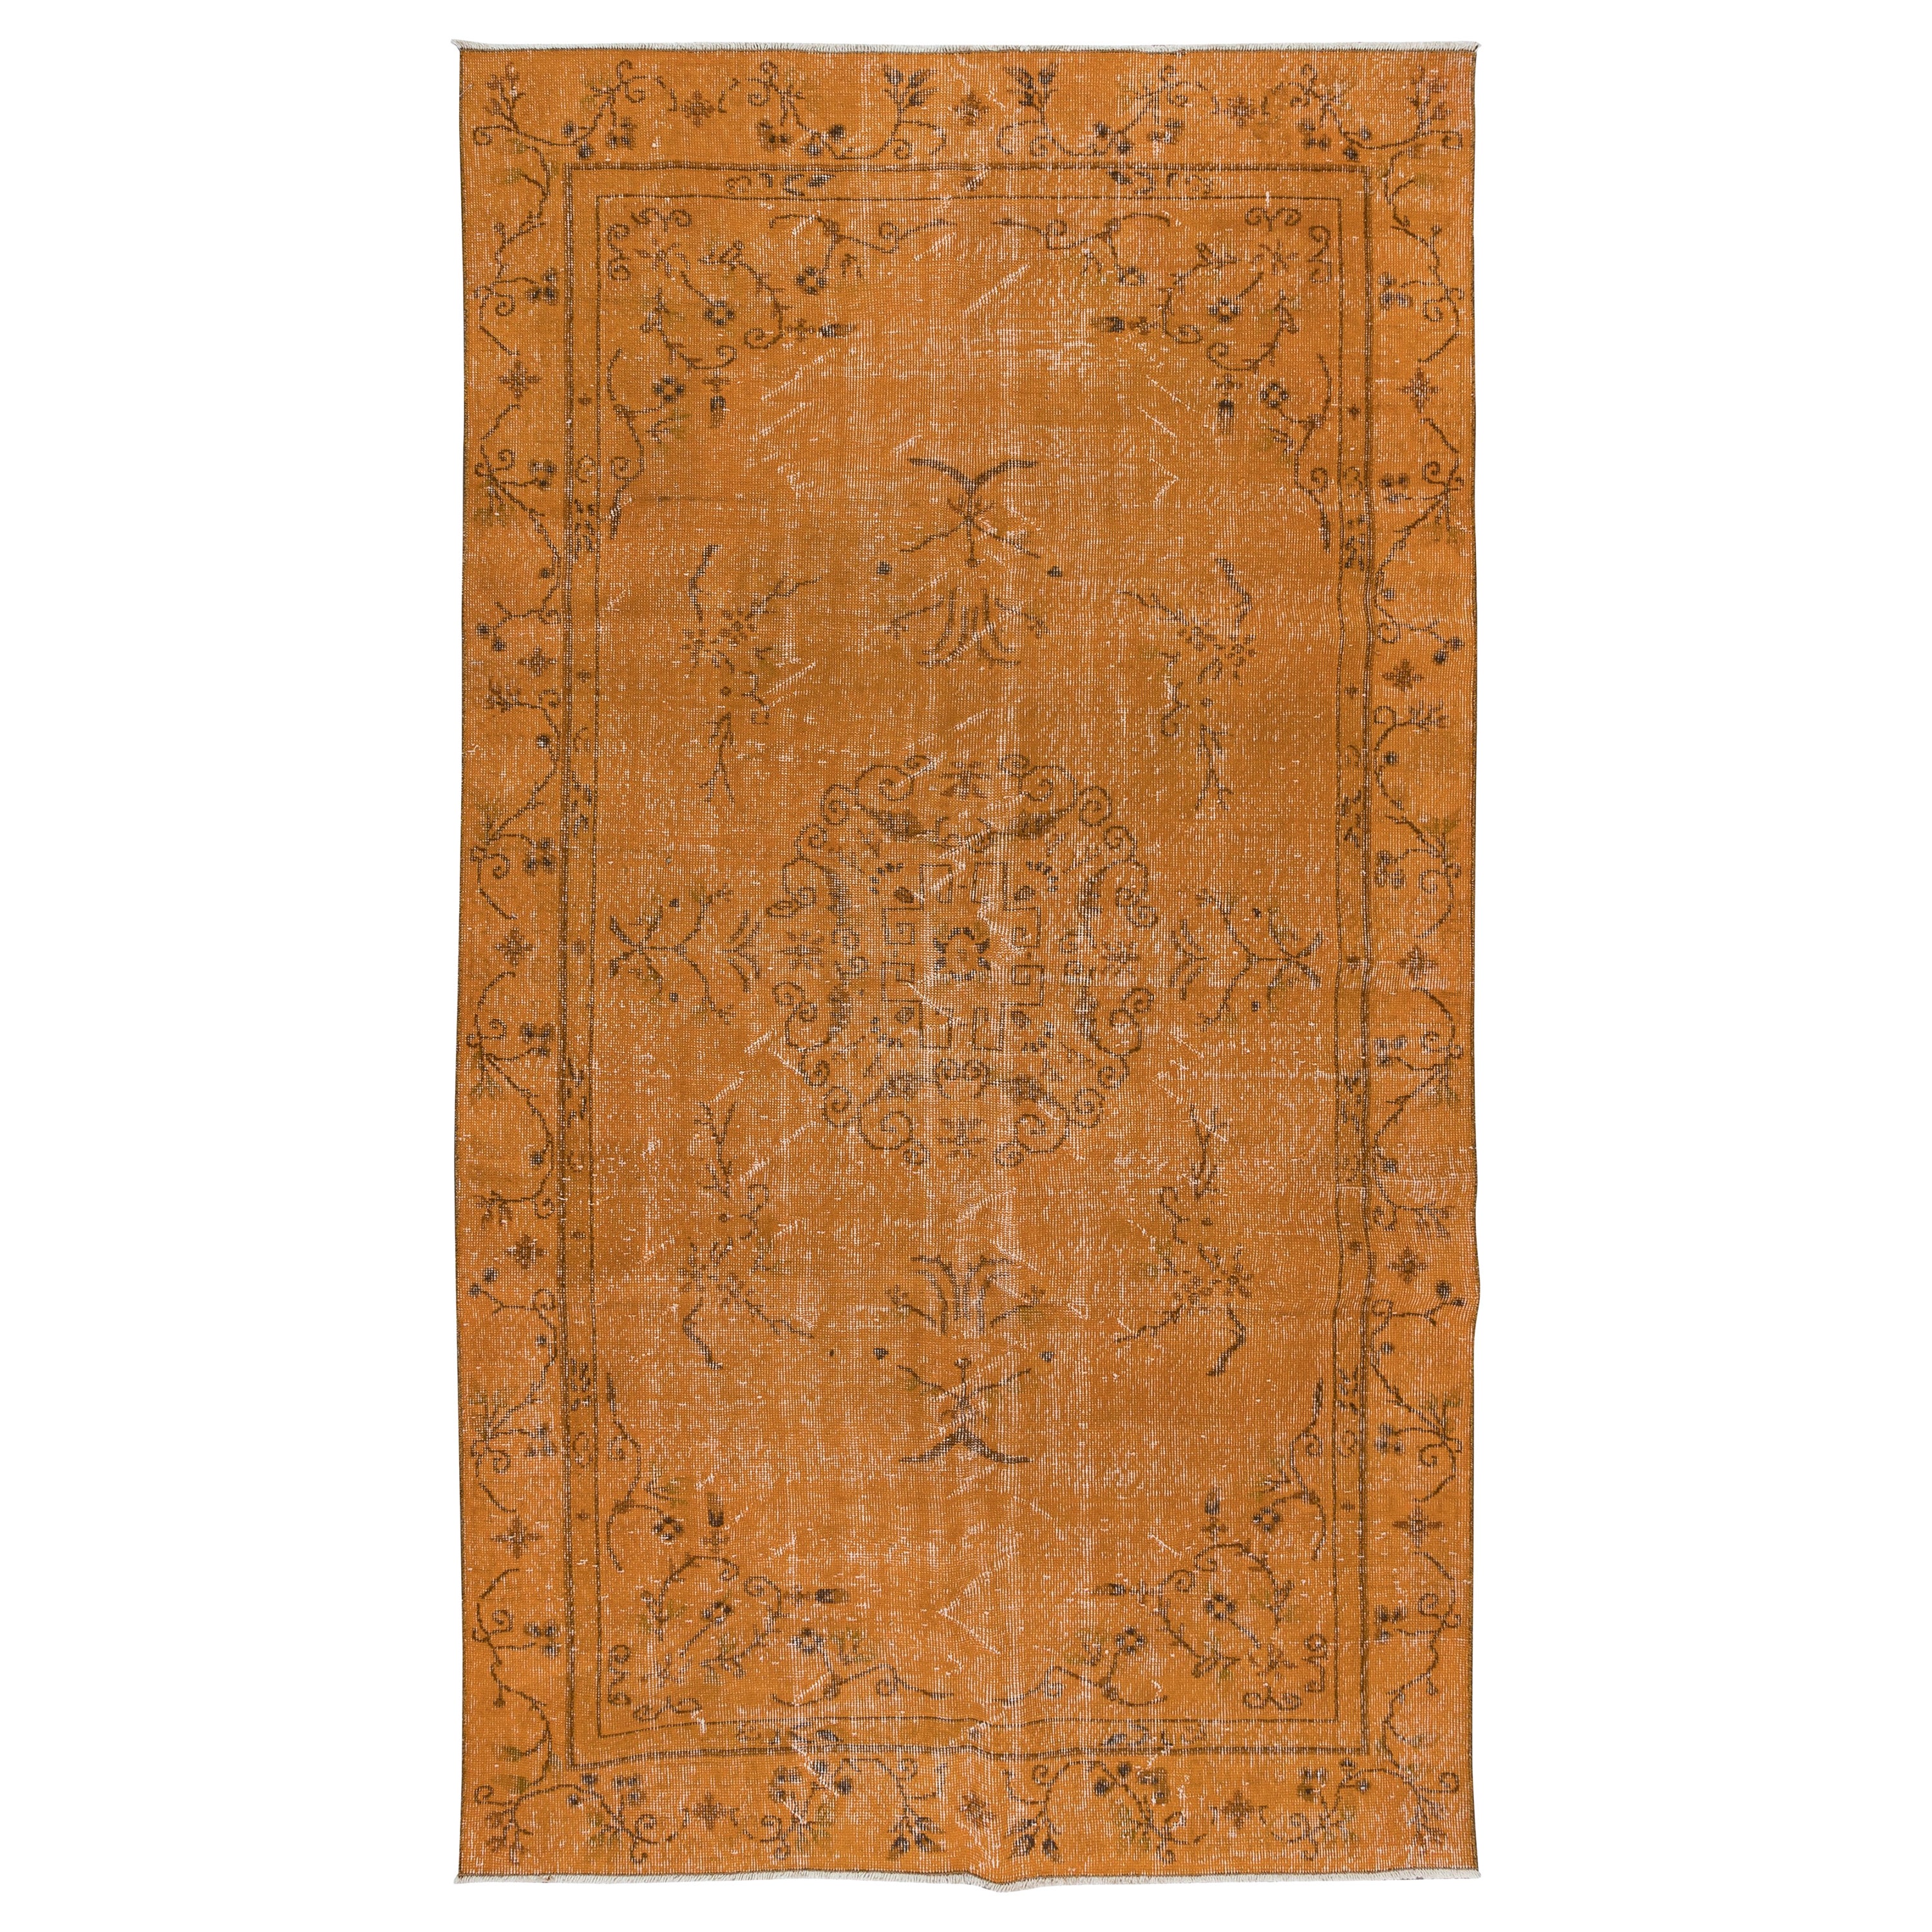 5.5x9.6 Ft Handmade Art Deco Rug, Orange Carpet for Dining Room & Living Room